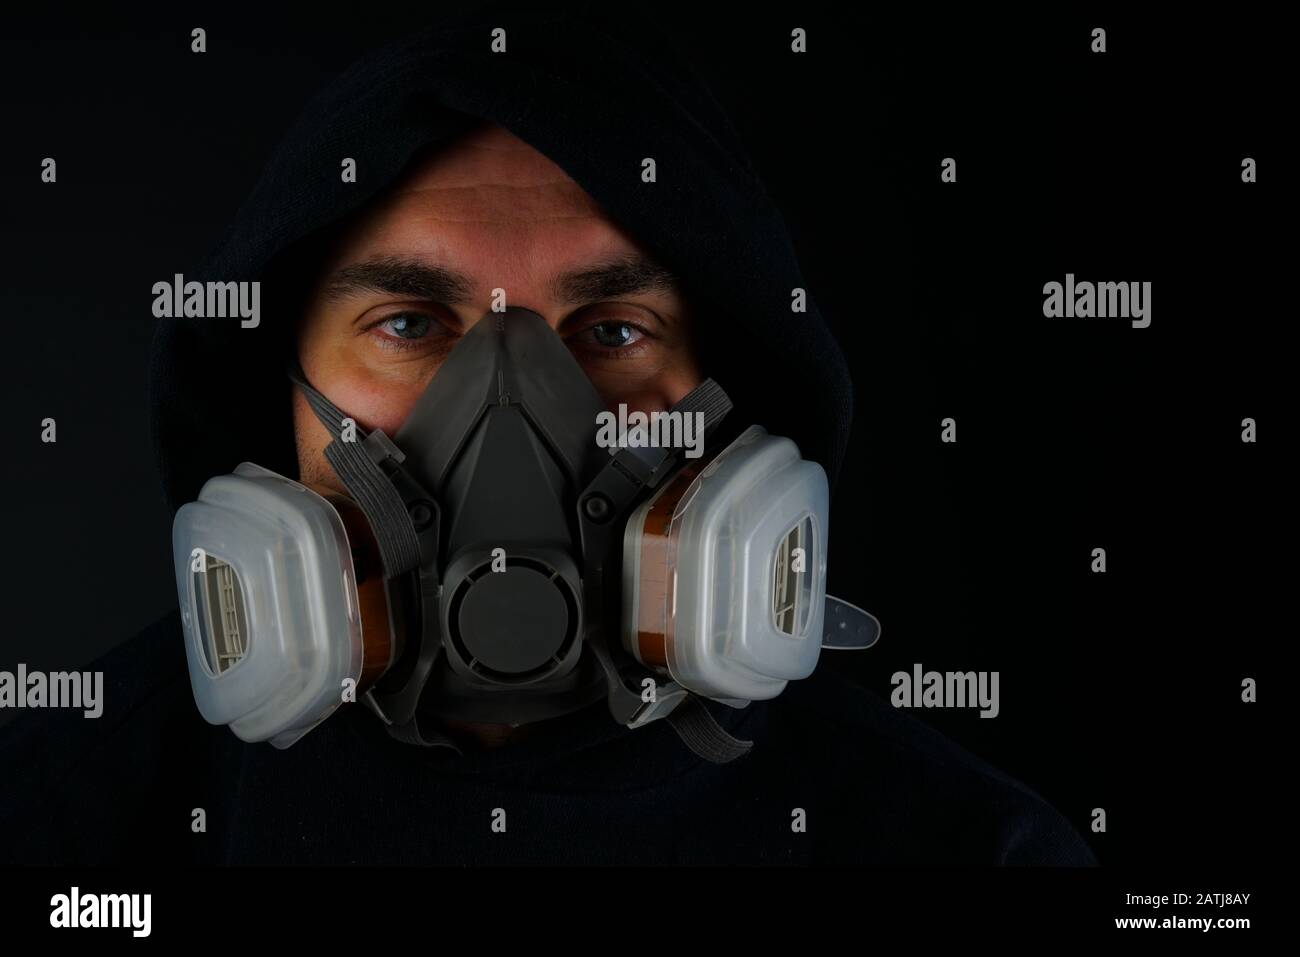 Portrait d'un homme adulte avec masque anti-poussière qui se fixe à l'appareil photo sur fond noir Banque D'Images